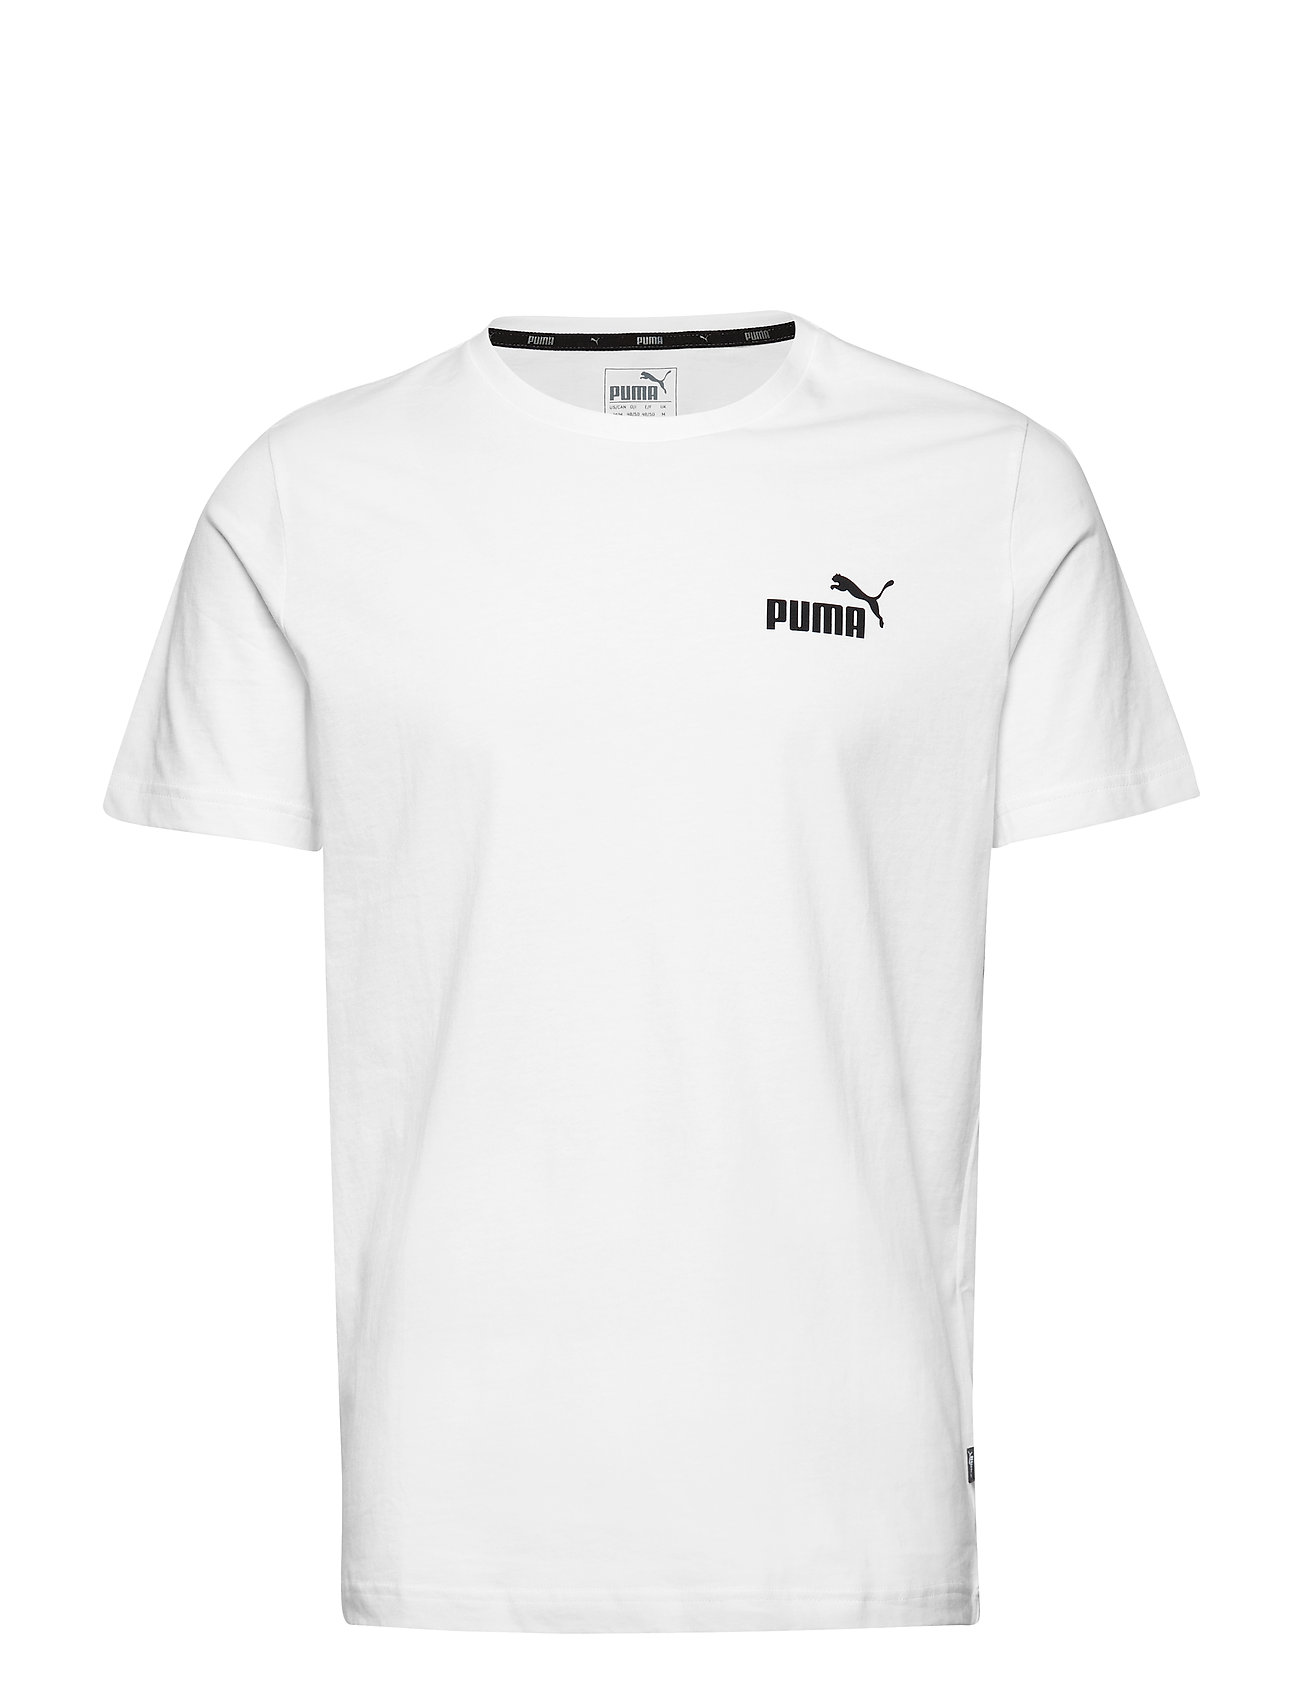 puma white tee shirts